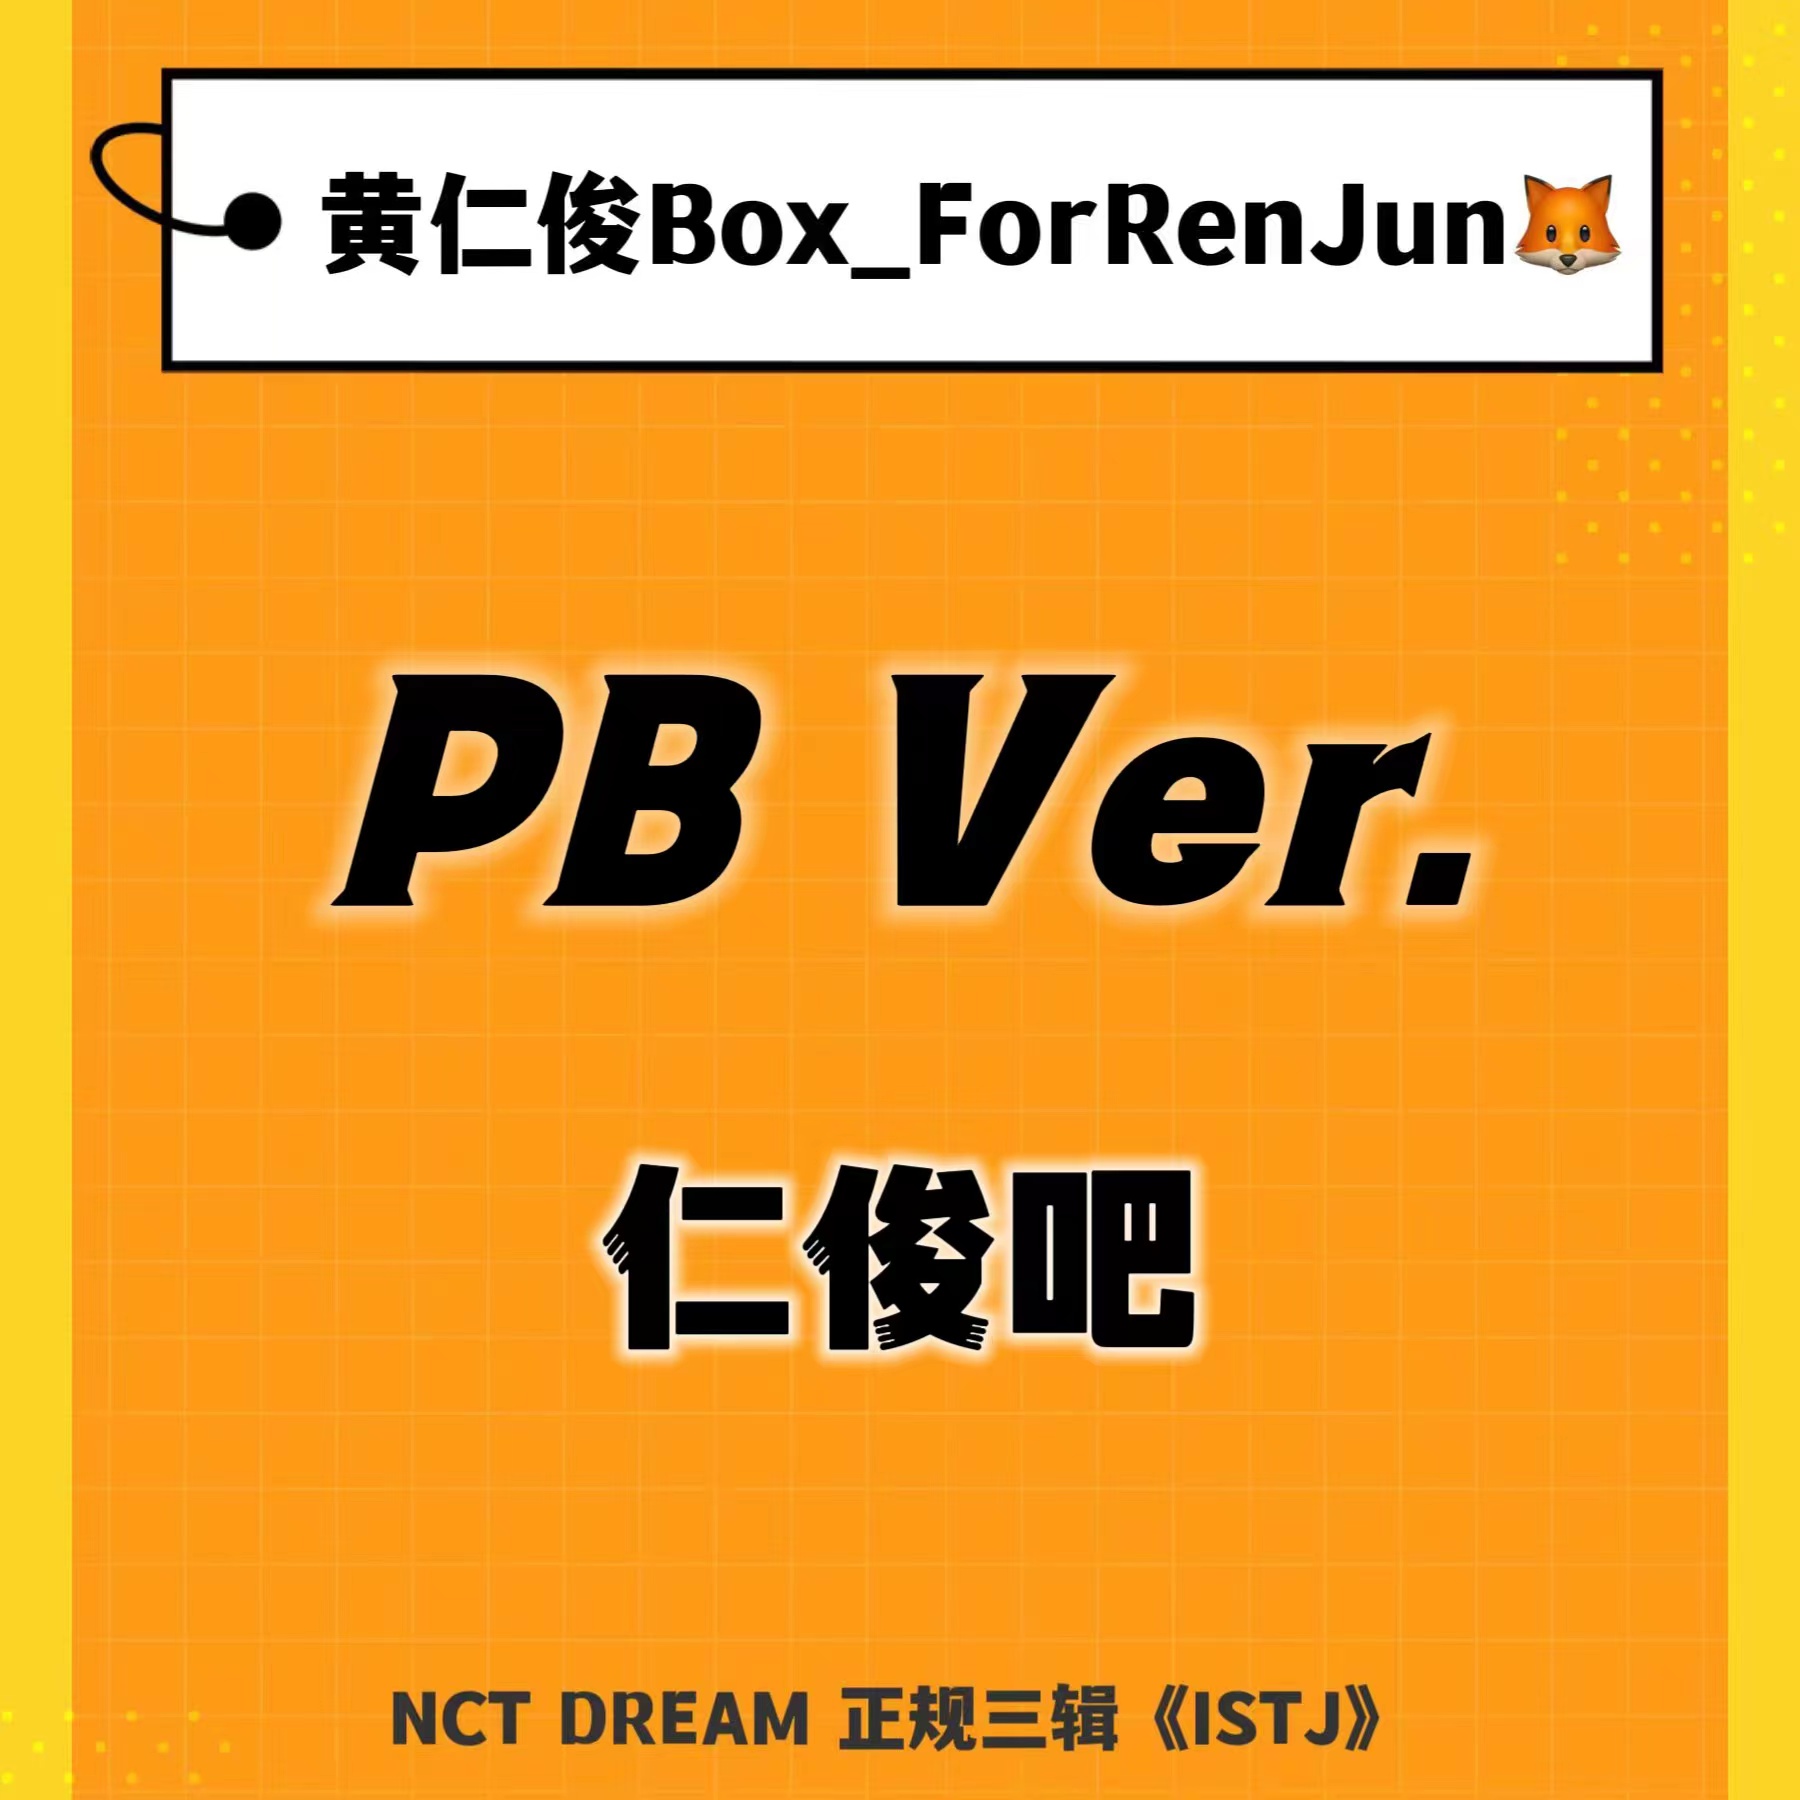 [全款 裸专] [Ktown4u Special Gift] NCT DREAM - 正规3辑 [ISTJ] (Photobook Ver.) (随机版本)_黄仁俊吧RenJunBar